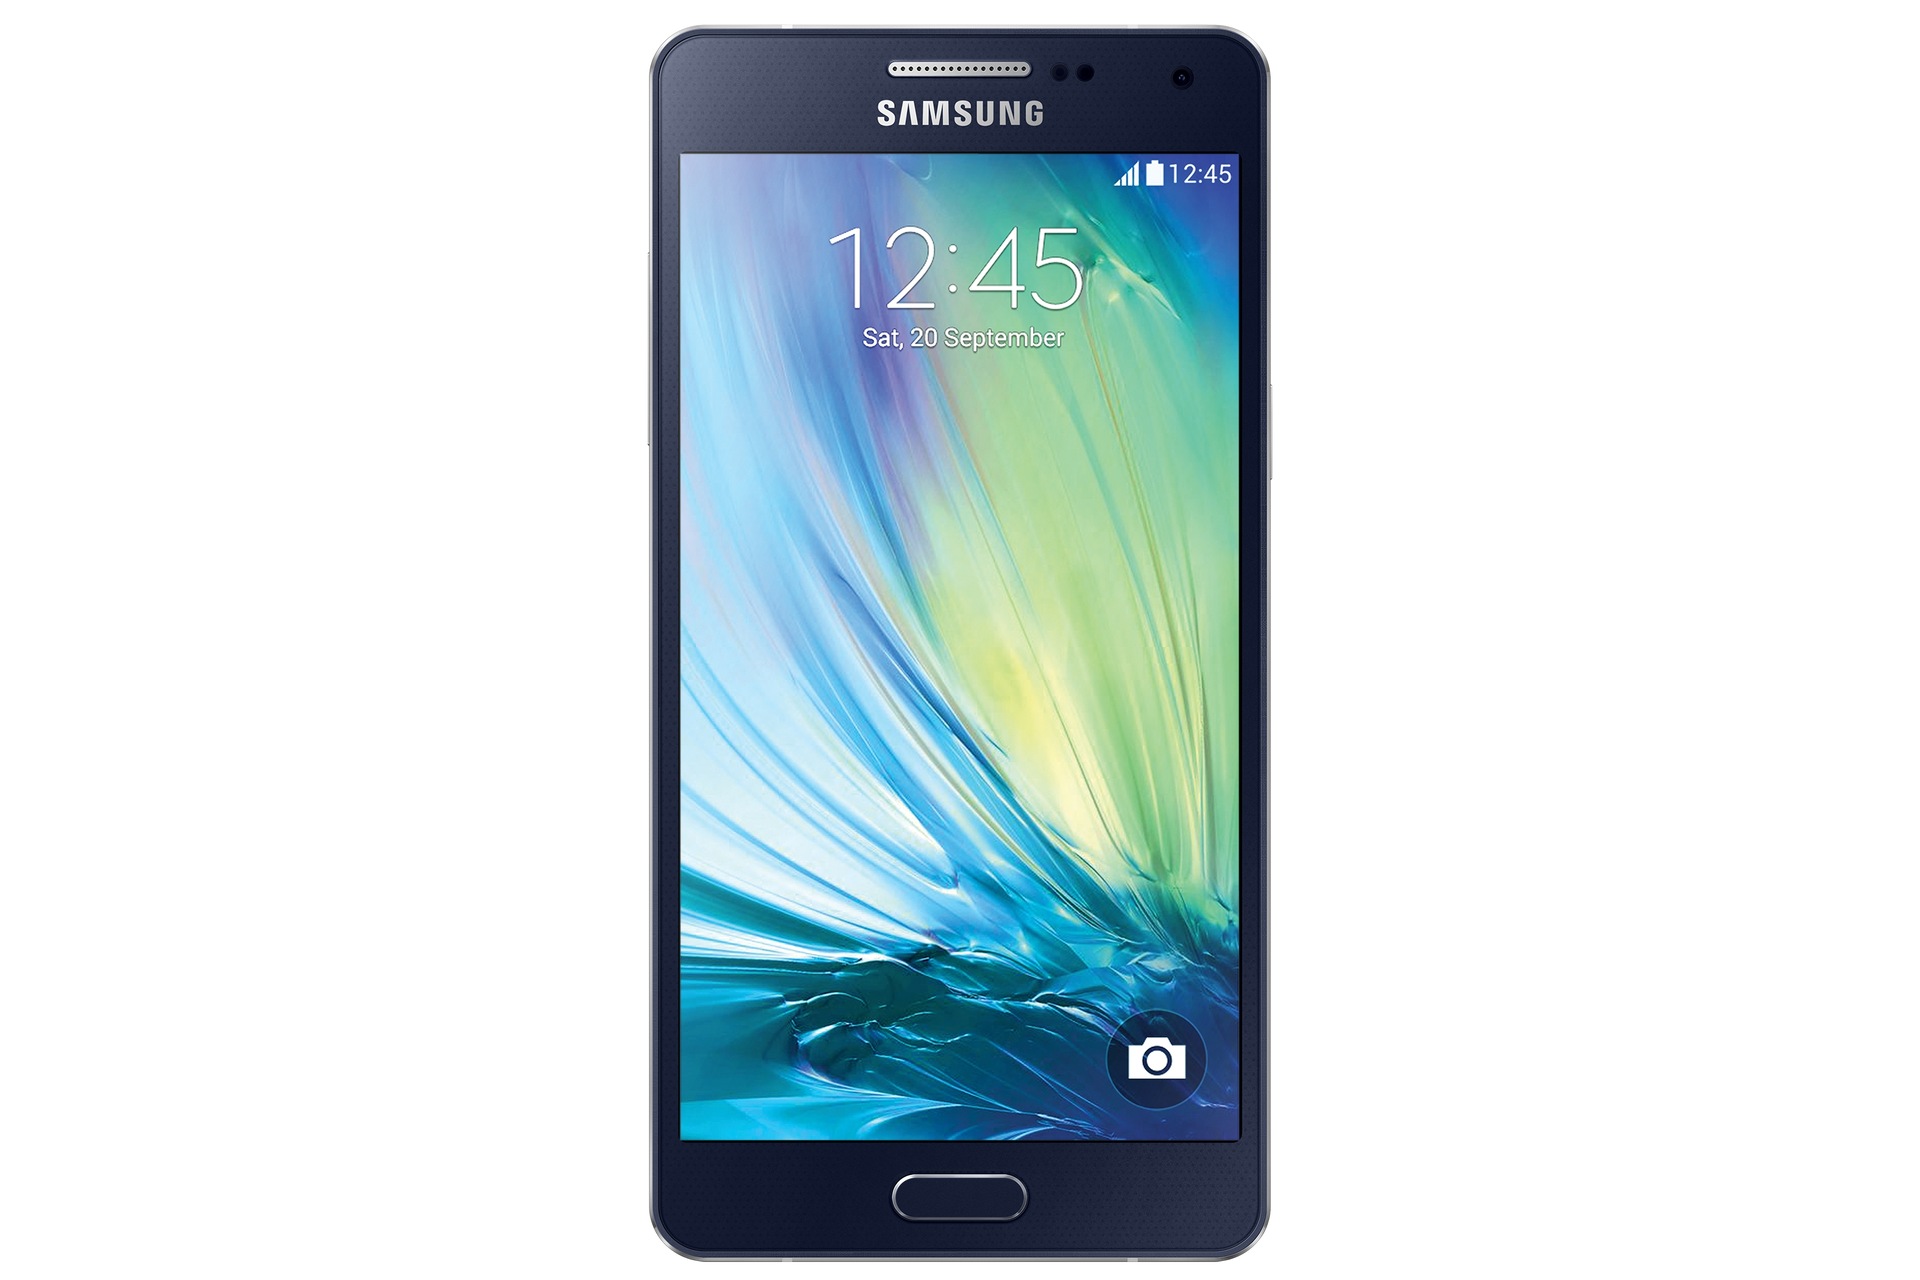 Kreet evalueren vervagen Galaxy A5 | Samsung Service NL